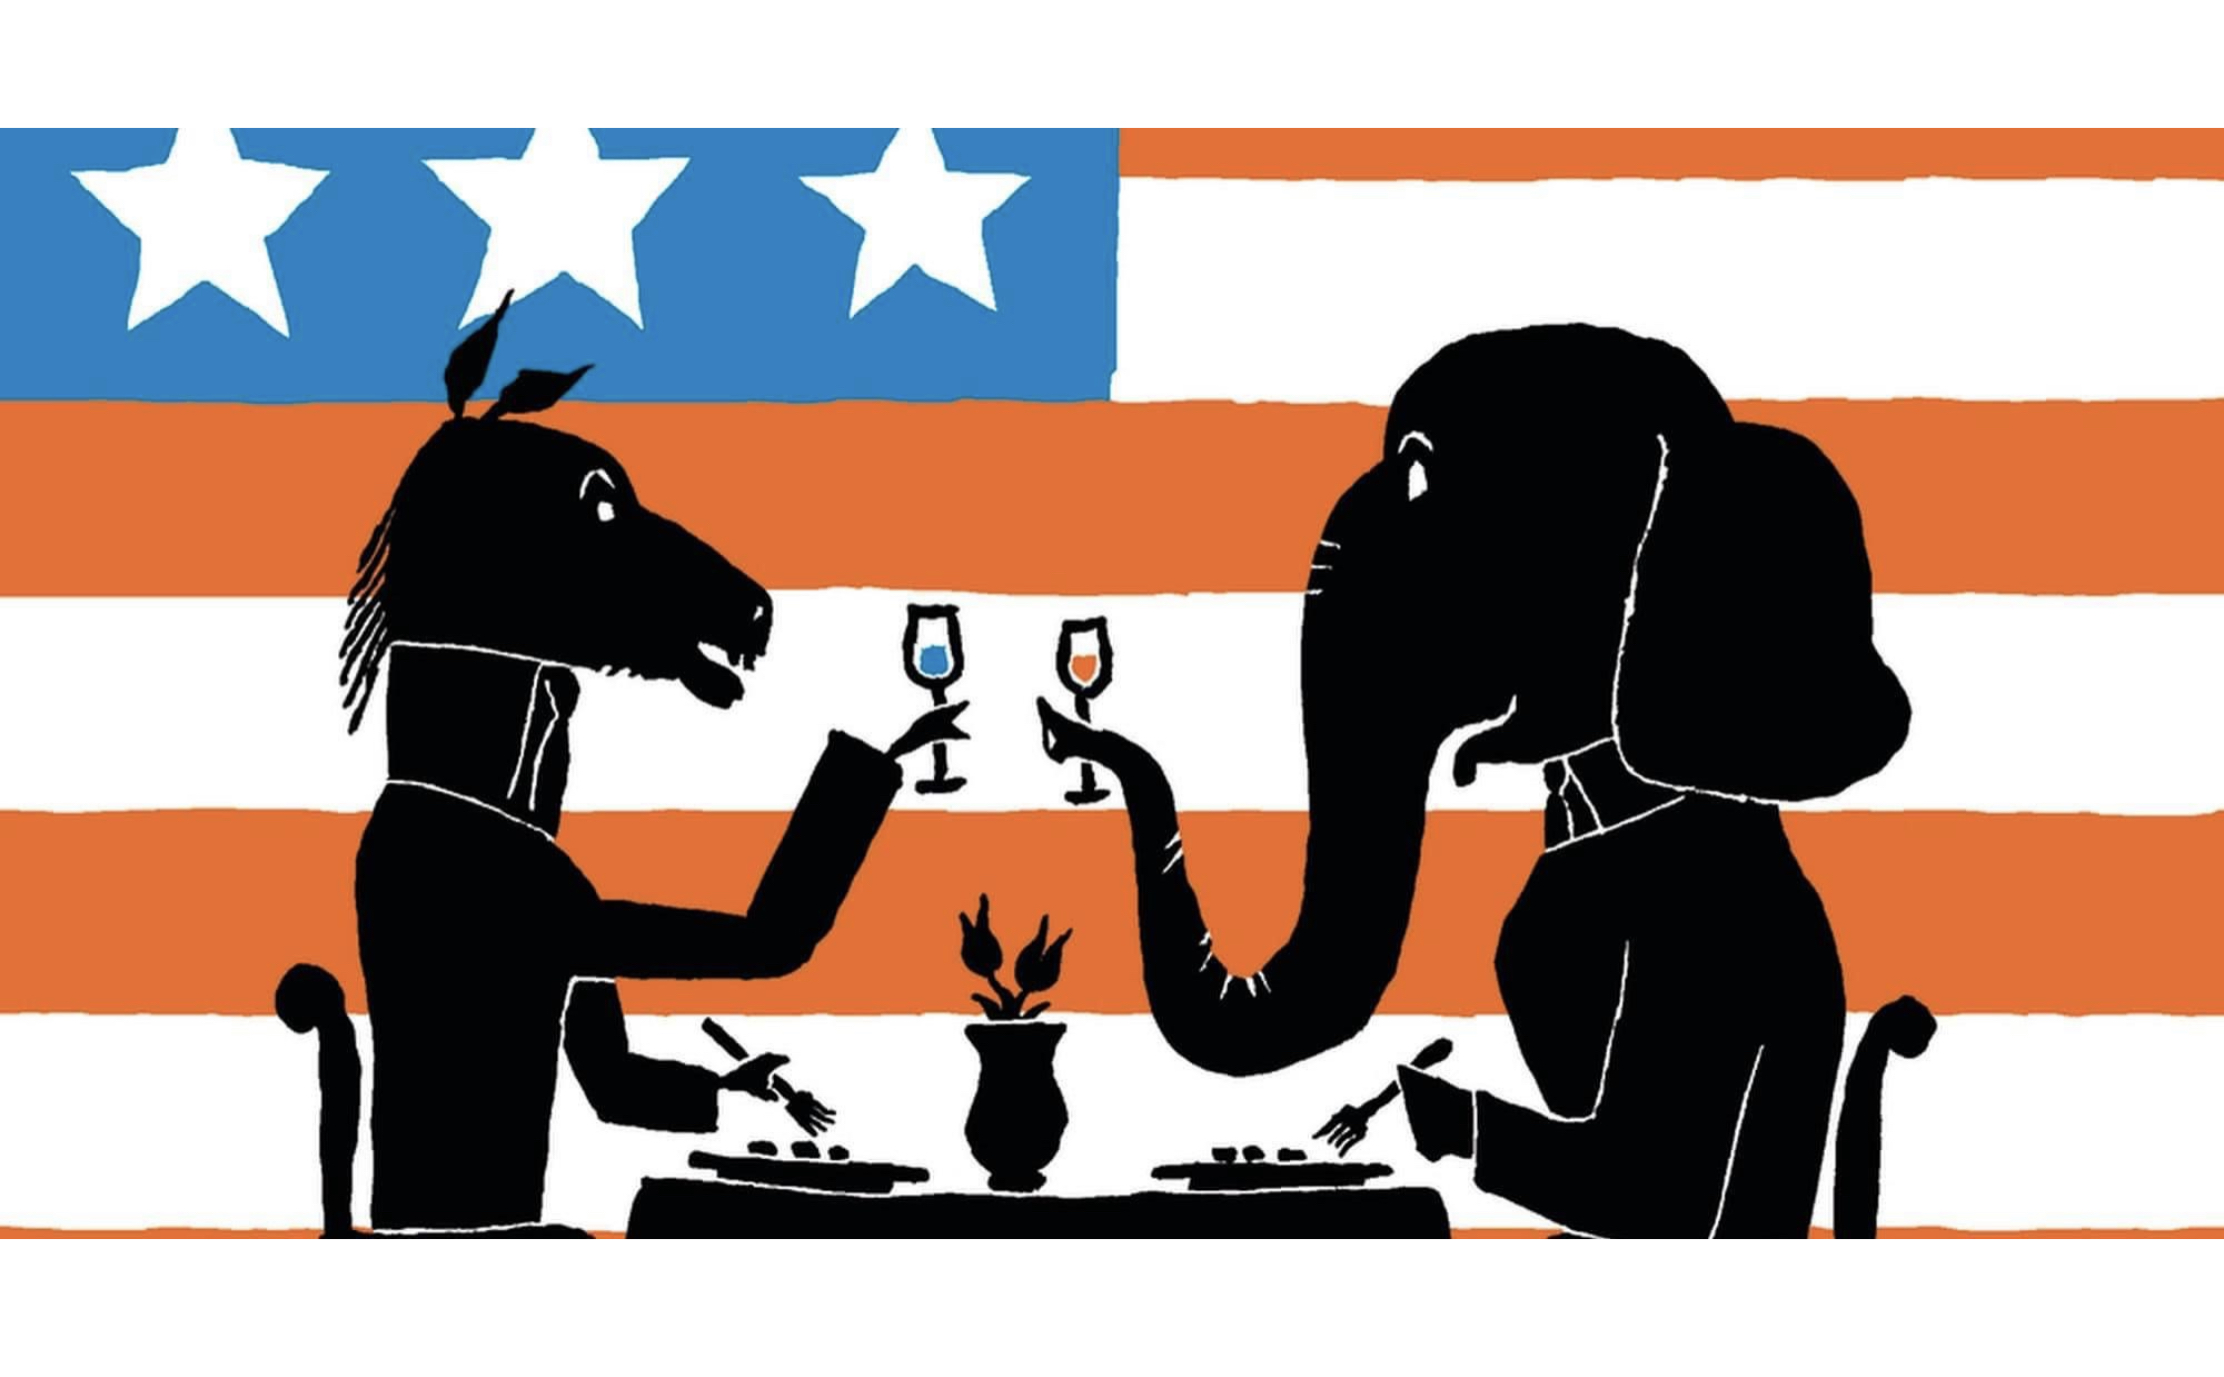 Bipartisan mediation orange and blue elephant and donkey